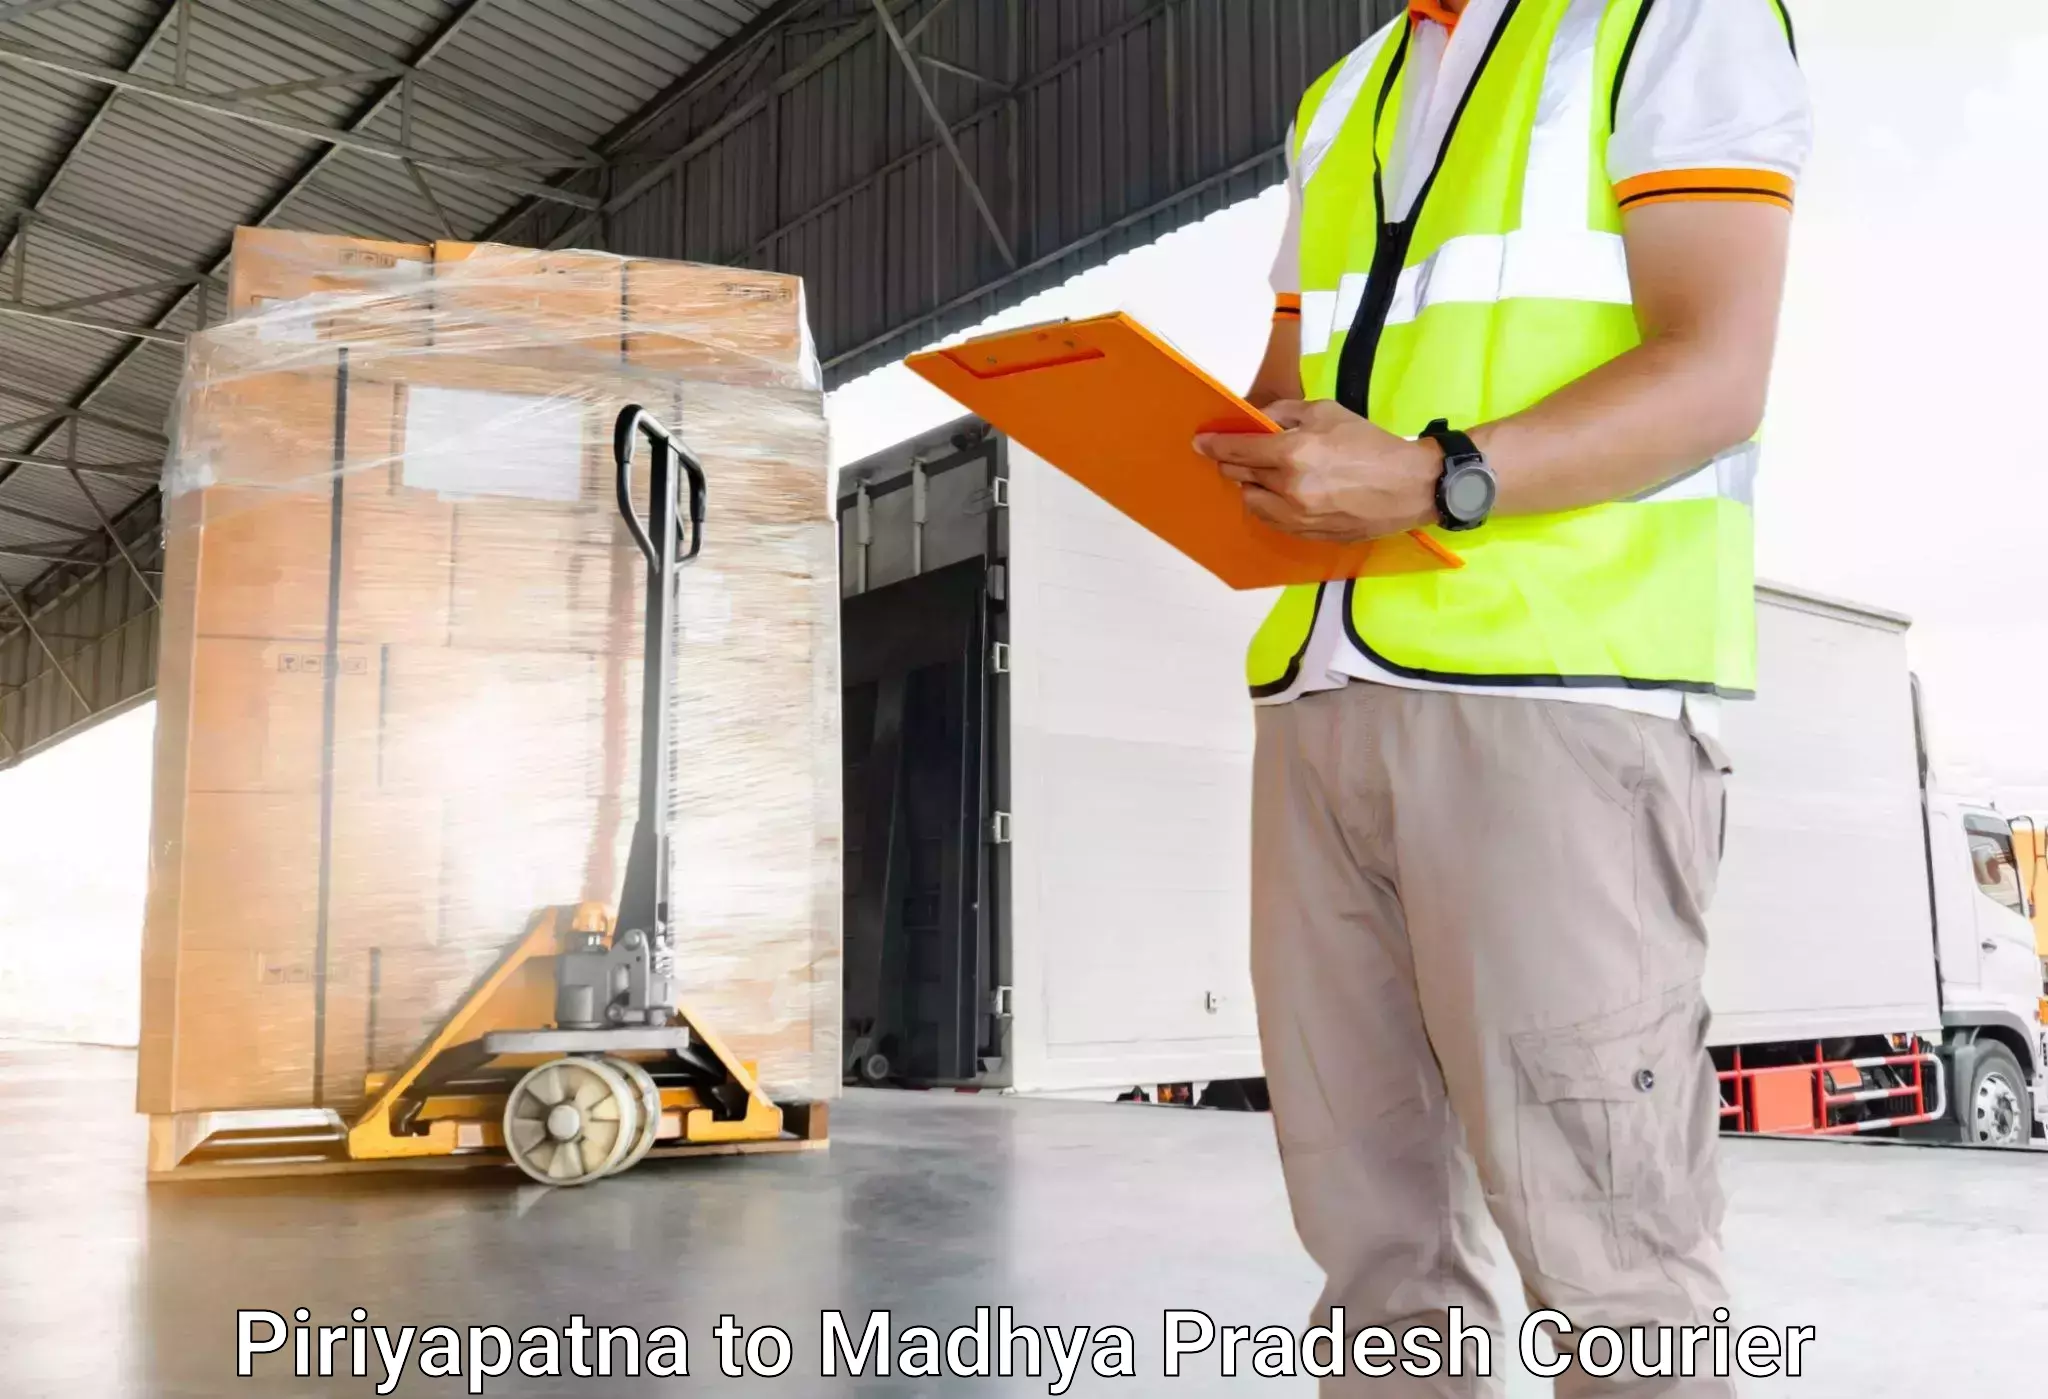 Suburban luggage delivery Piriyapatna to Nagod